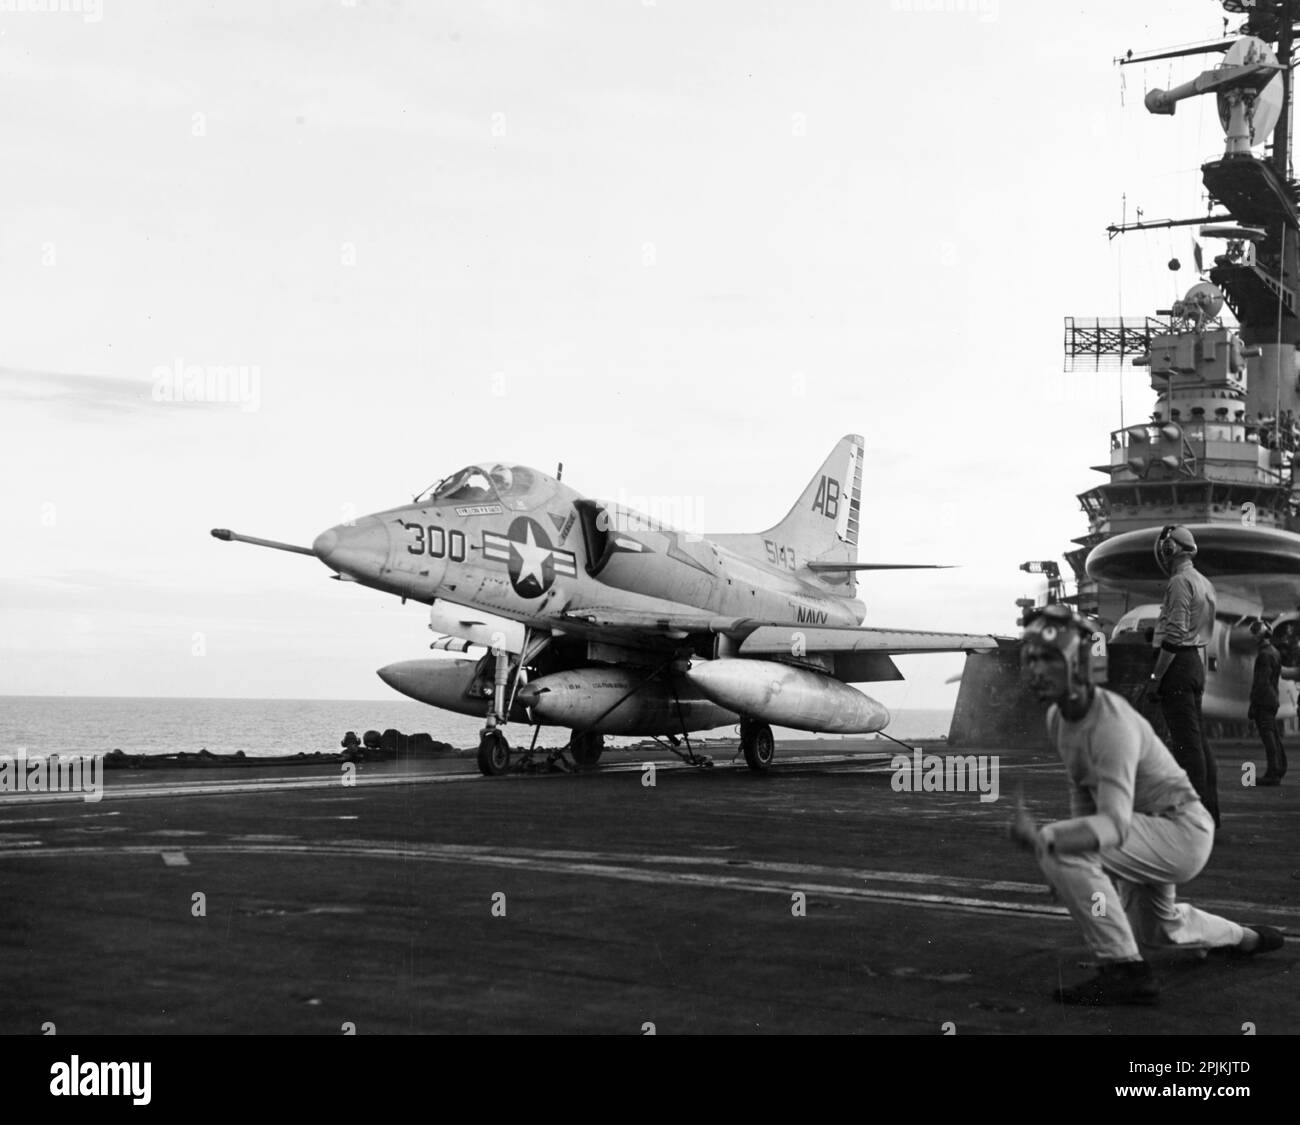 A ÉTATS-UNIS Navy Douglas A-4C Skyhawk (Buno 145143) de l'escadron d'attaque 172 (va-172) 'Blue Bolts' se prépare à quitter le pont de vol du porte-avions USS Franklin D. Roosevelt (CVA-42), le 10 août 1966. Va-172 a été affecté à l'attaque de l'aile aérienne 1 (CVW-1) à bord du Franklin D. Roosevelt pour un déploiement au Vietnam du 21 juin 1966 au 21 février 1967. Cet avion a été perdu le 2 décembre 1966, lorsqu'il a été abattu par un missile sa-2 nord-vietnamien lors d'une mission de reconnaissance de nuit au-dessus du delta de la rivière Rouge, au sud de Hanoï, au Vietnam. Le pilote, le commandant Bruce A. Nystrom, co de va-172 Banque D'Images